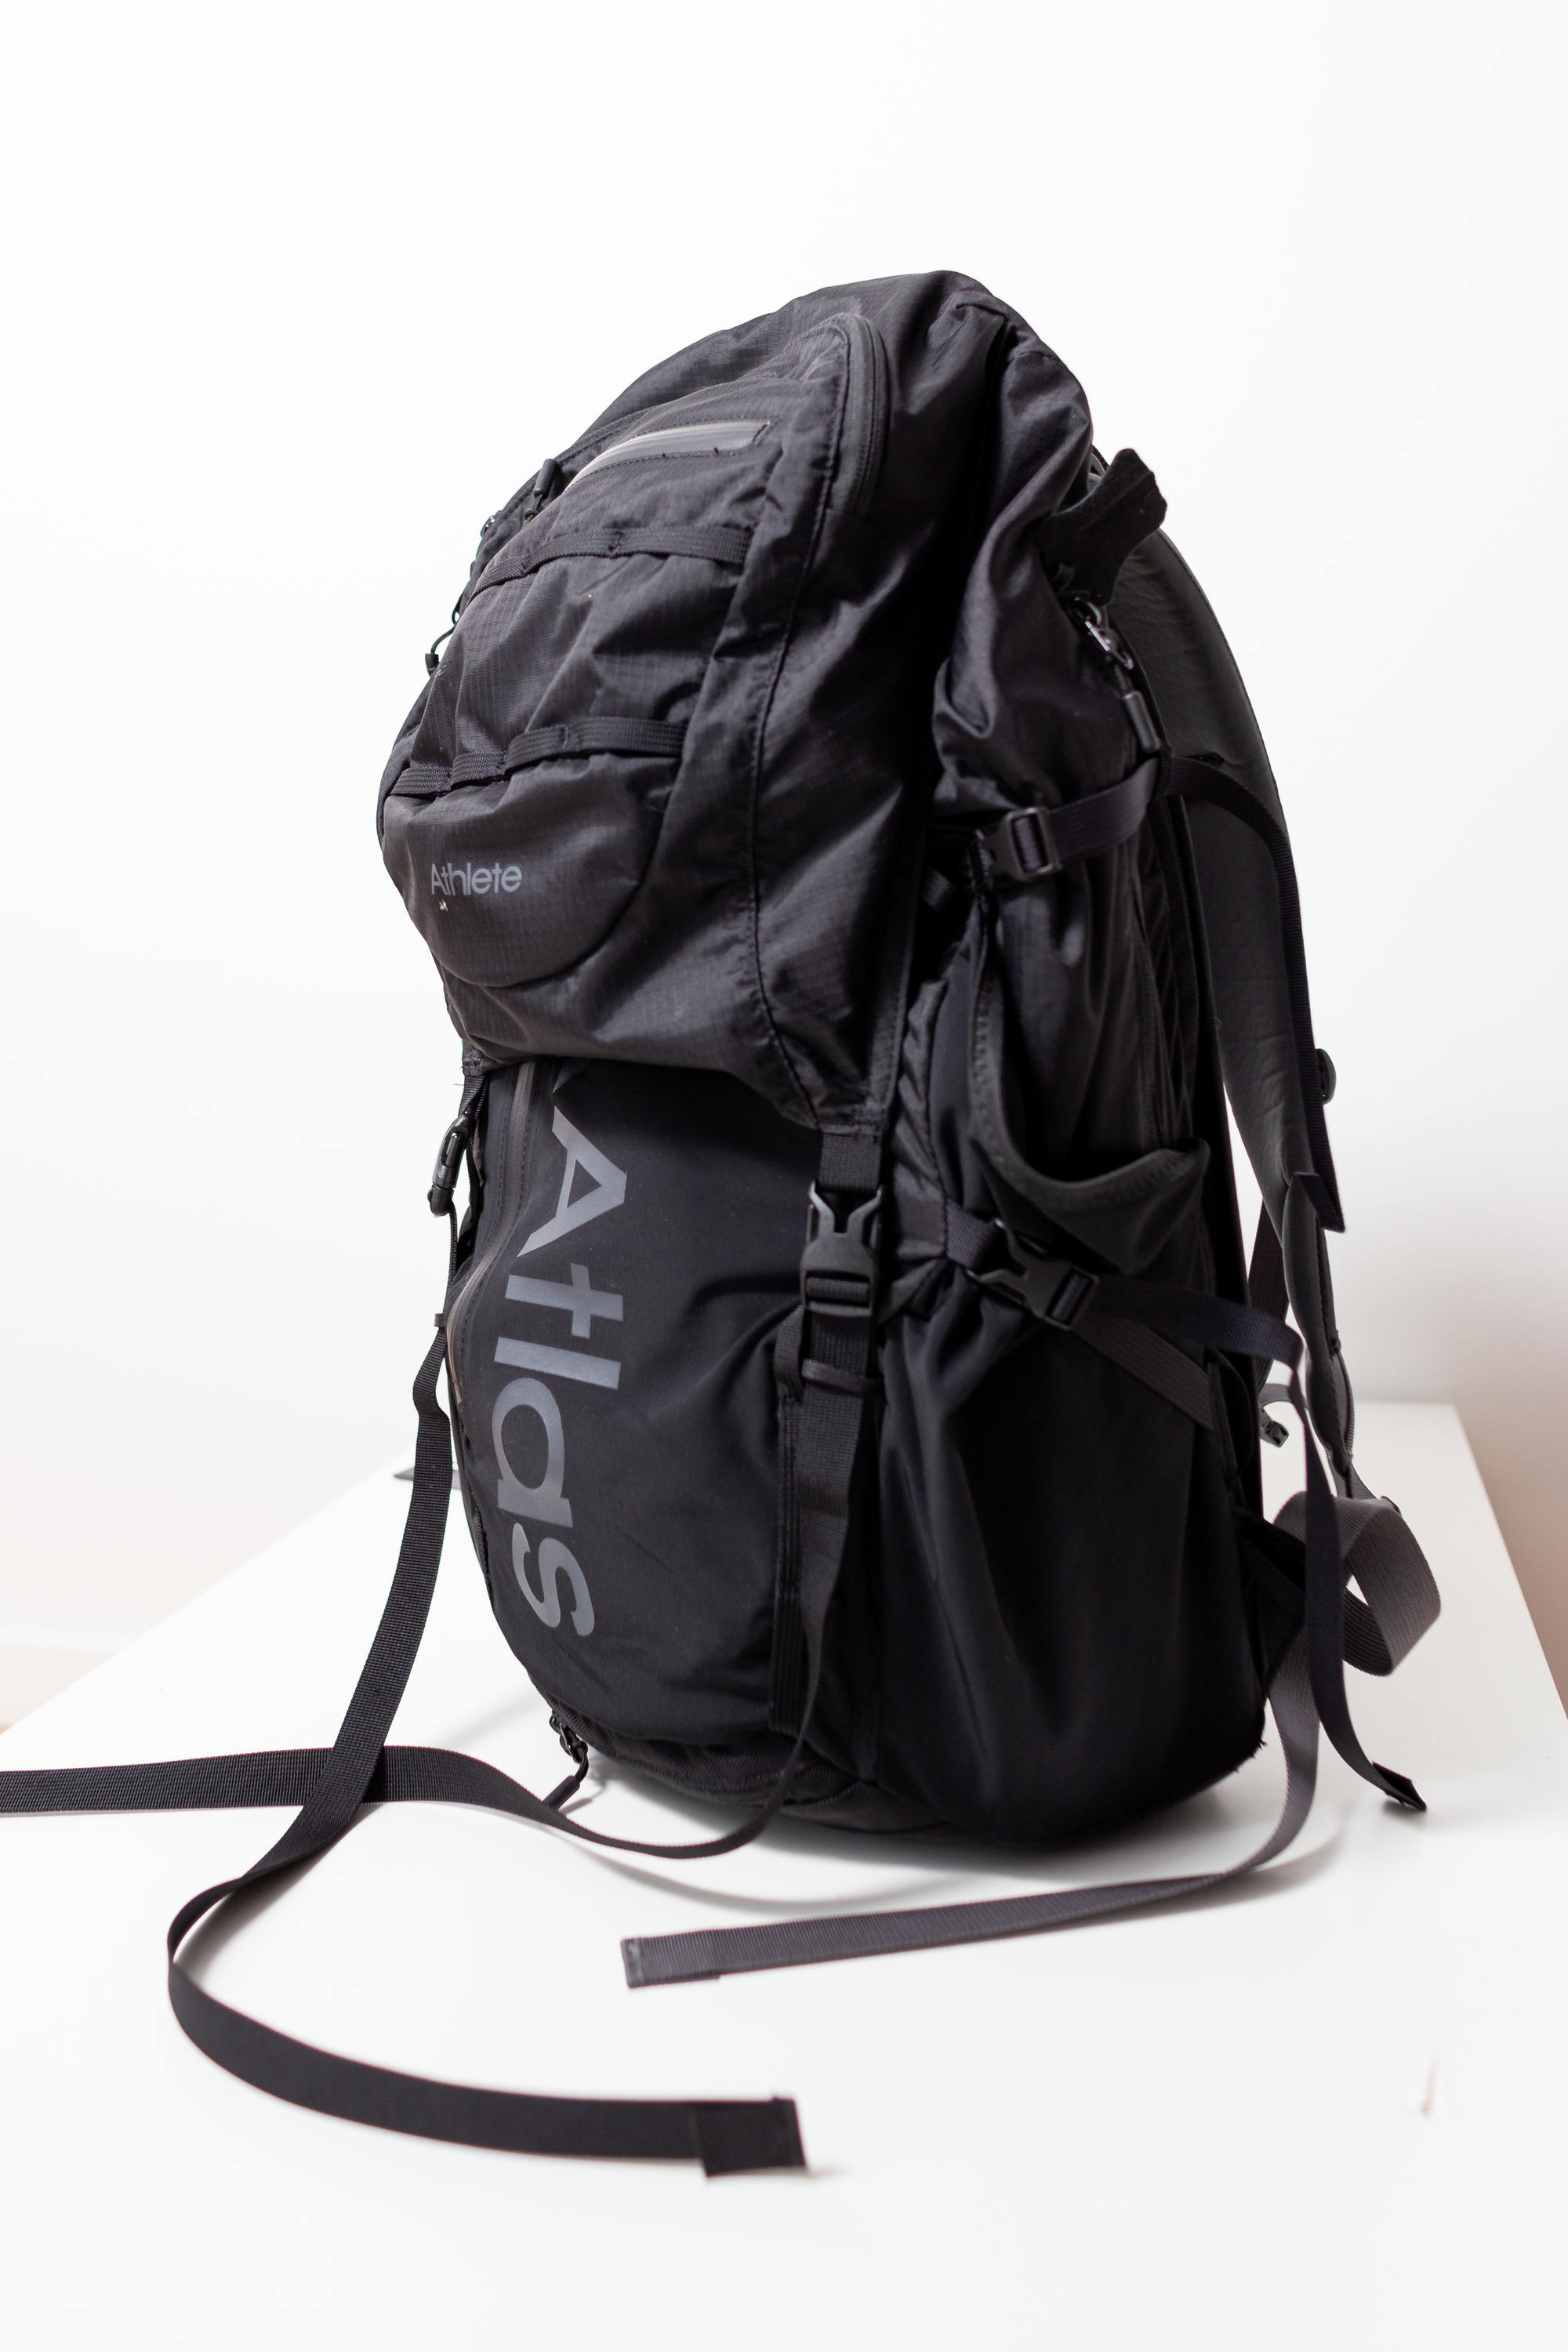 atlas athlete backpack